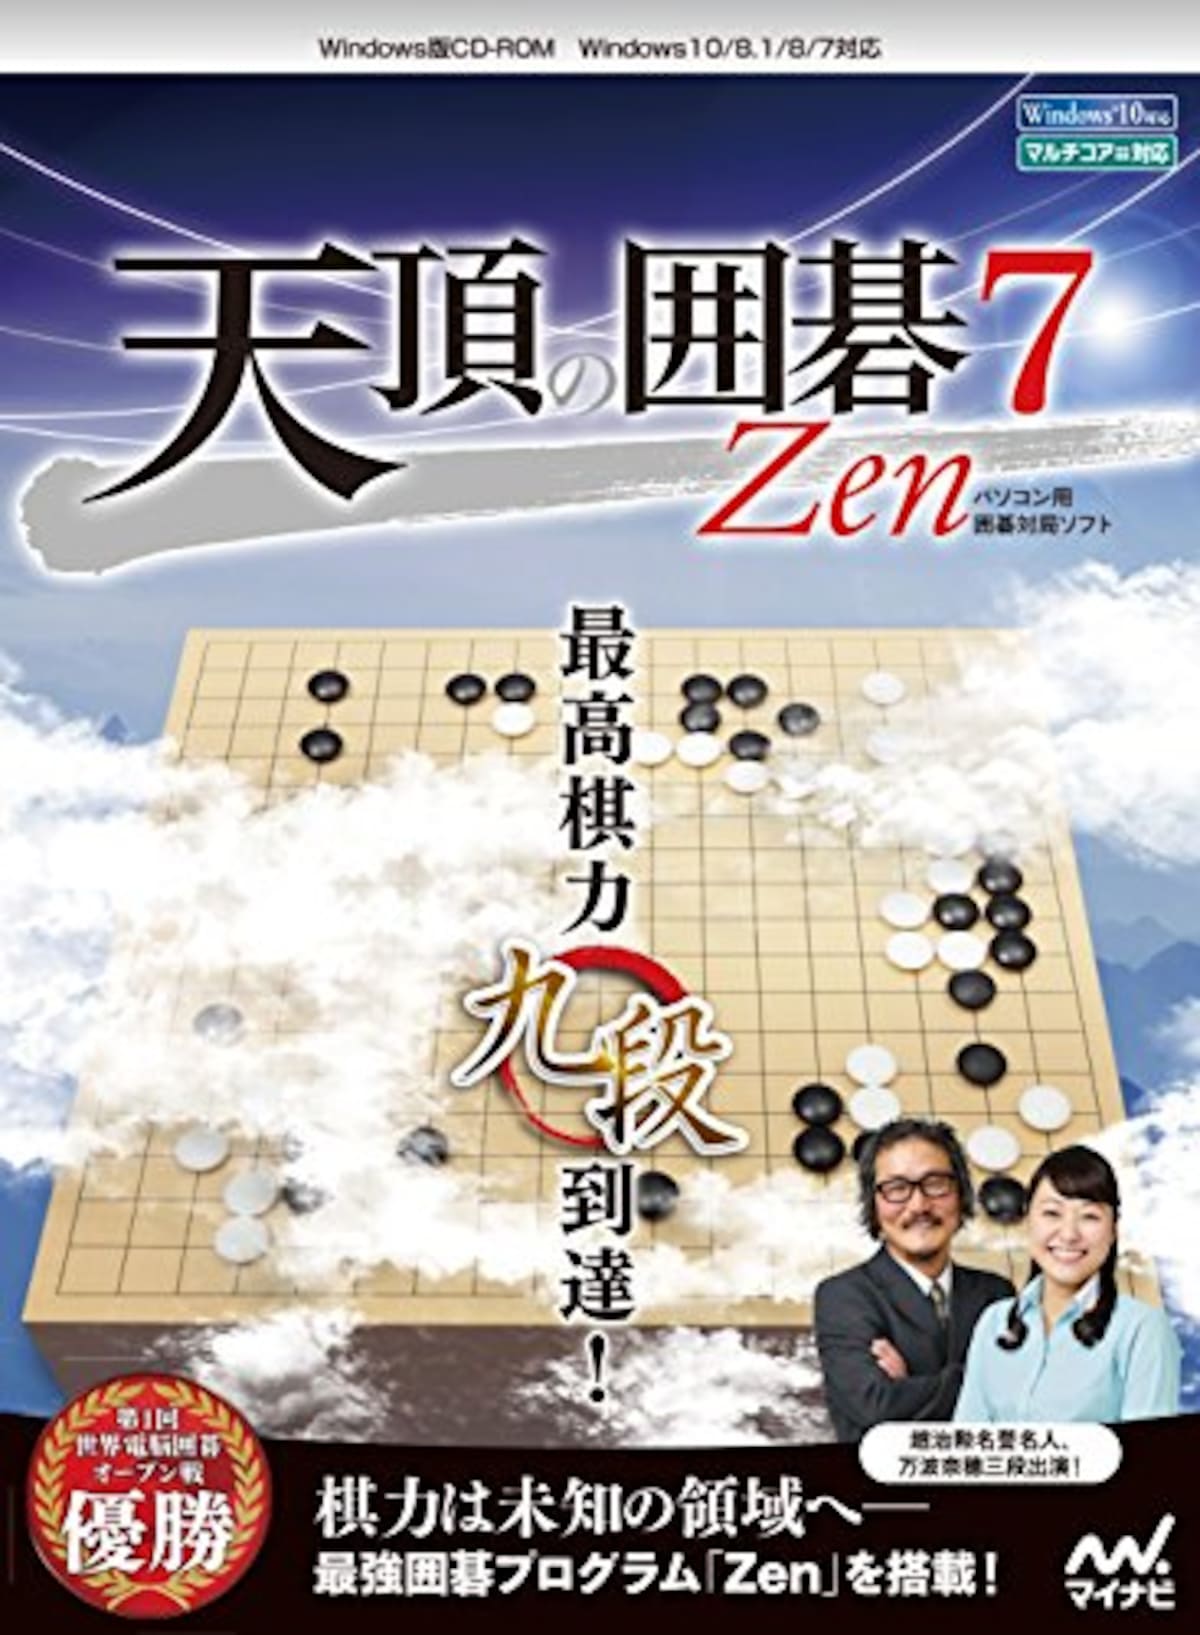 天頂の囲碁7 Zen パソコン用囲碁対局ソフト